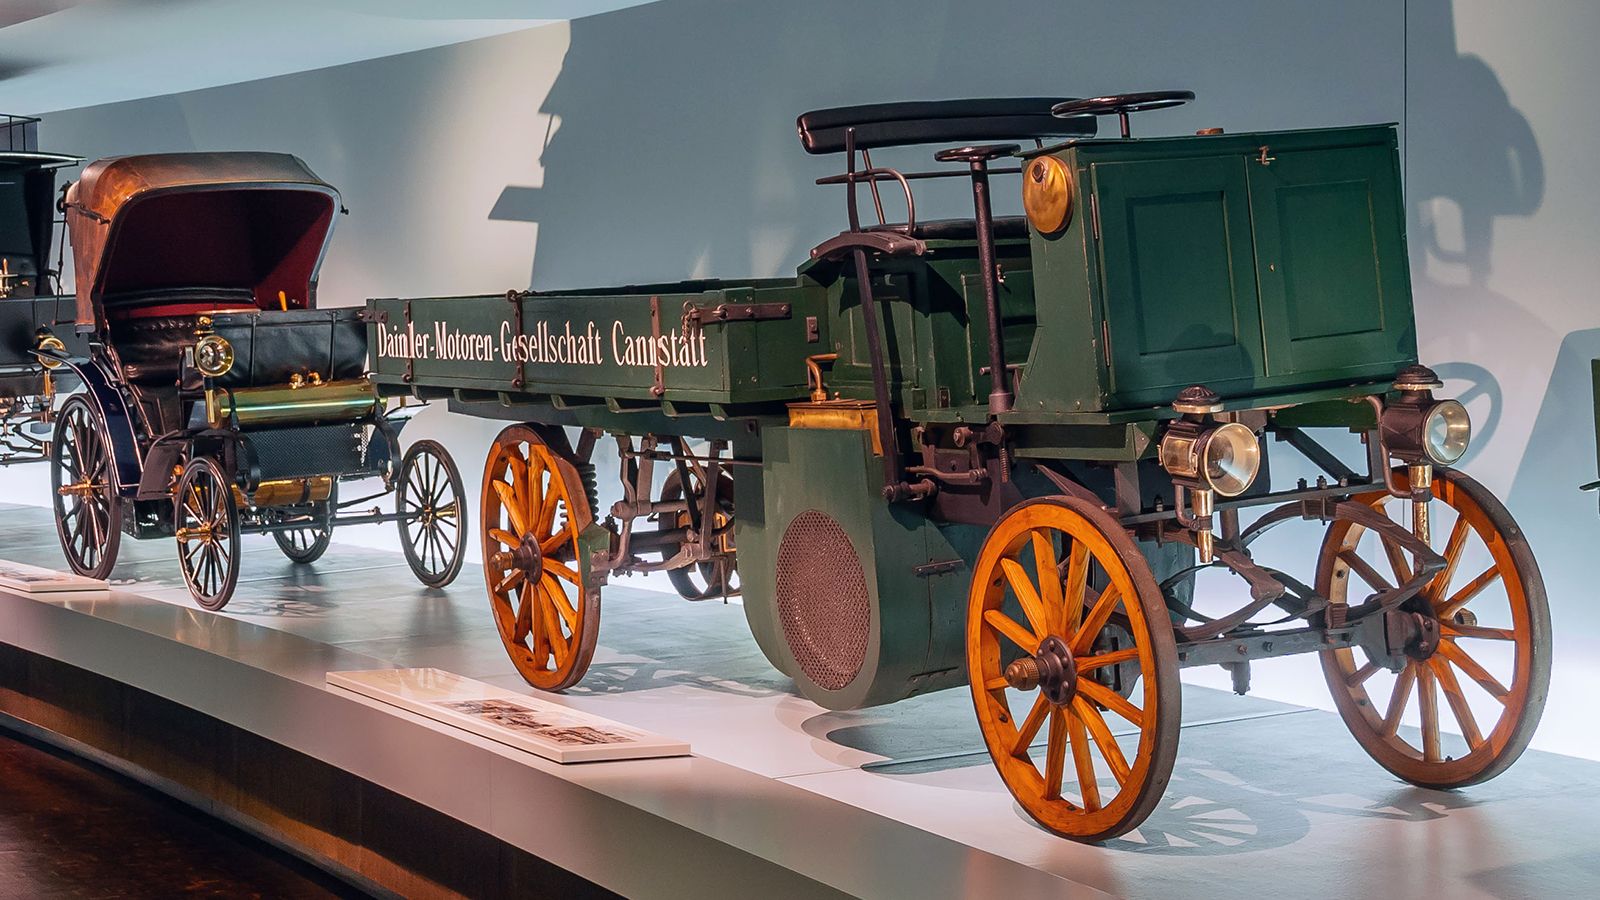 Αν και είναι μόλις δύο χρόνια νεότερο από το πρώτο φορτηγό, που παραδόθηκε το 1896, η τεχνολογία του έχει ήδη αναπτυχθεί σημαντικά.